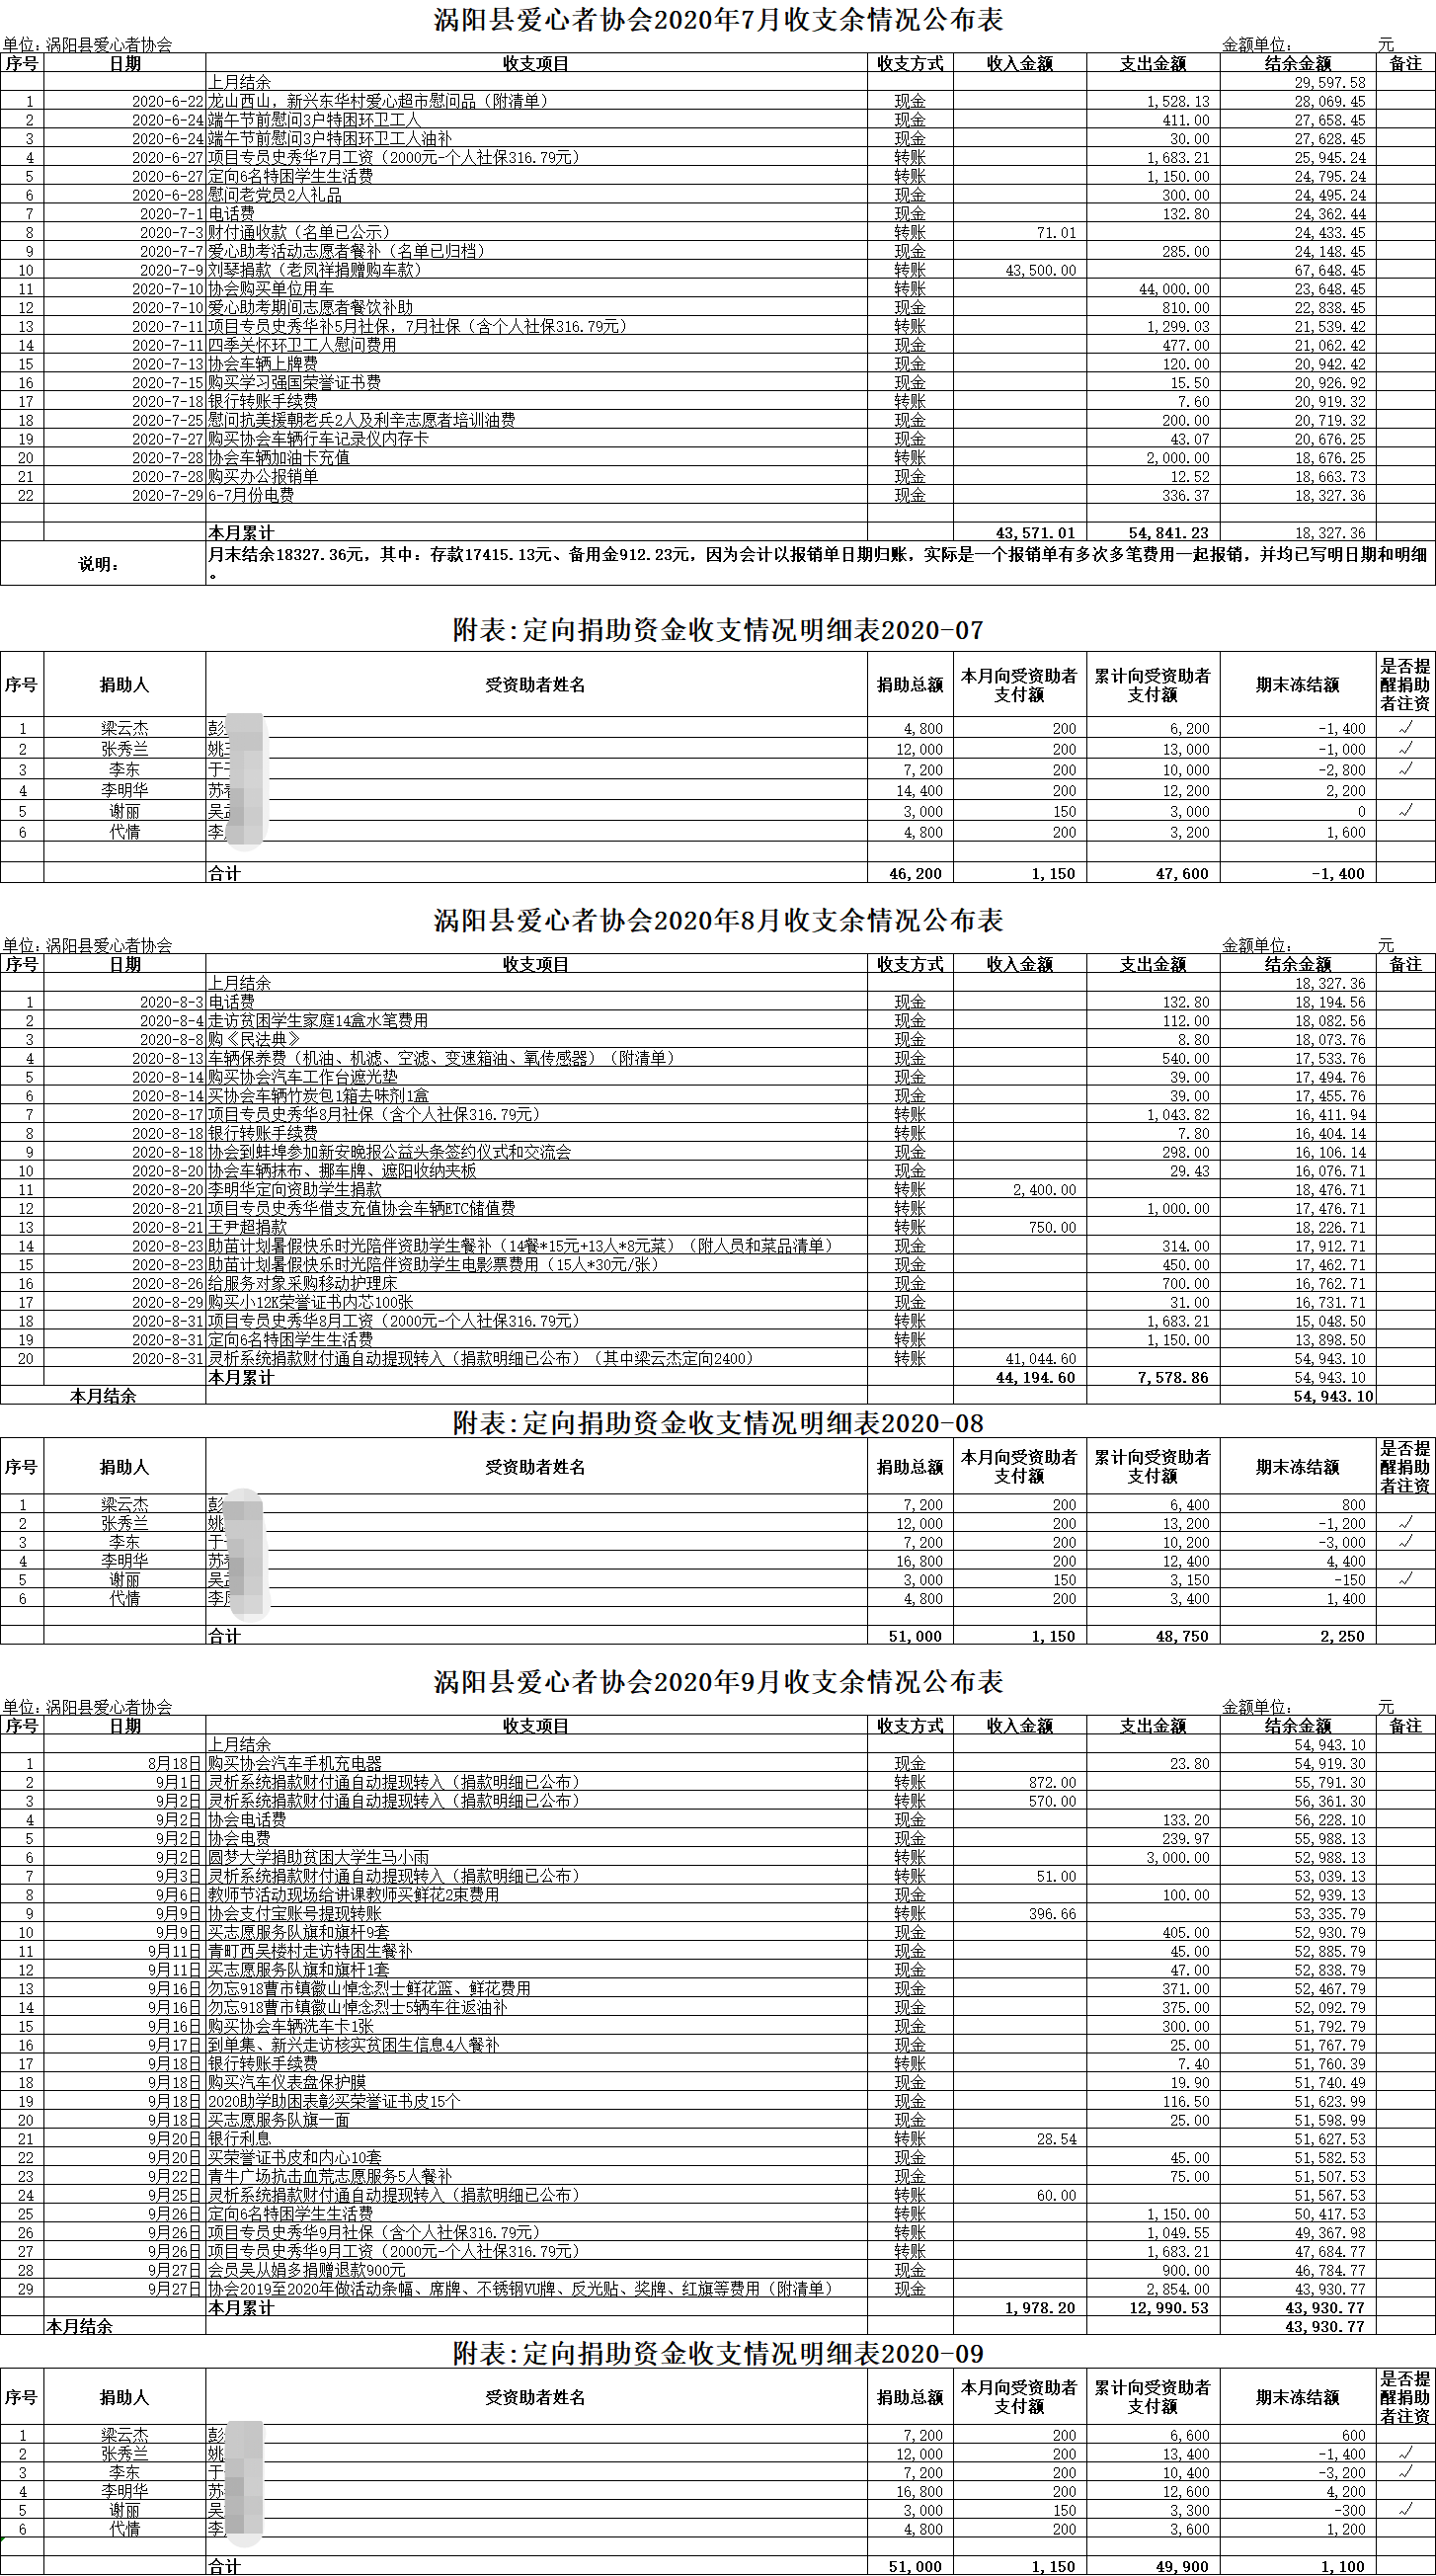 涡阳县爱心者协会2020年收支余情况公布表（3季度）.png